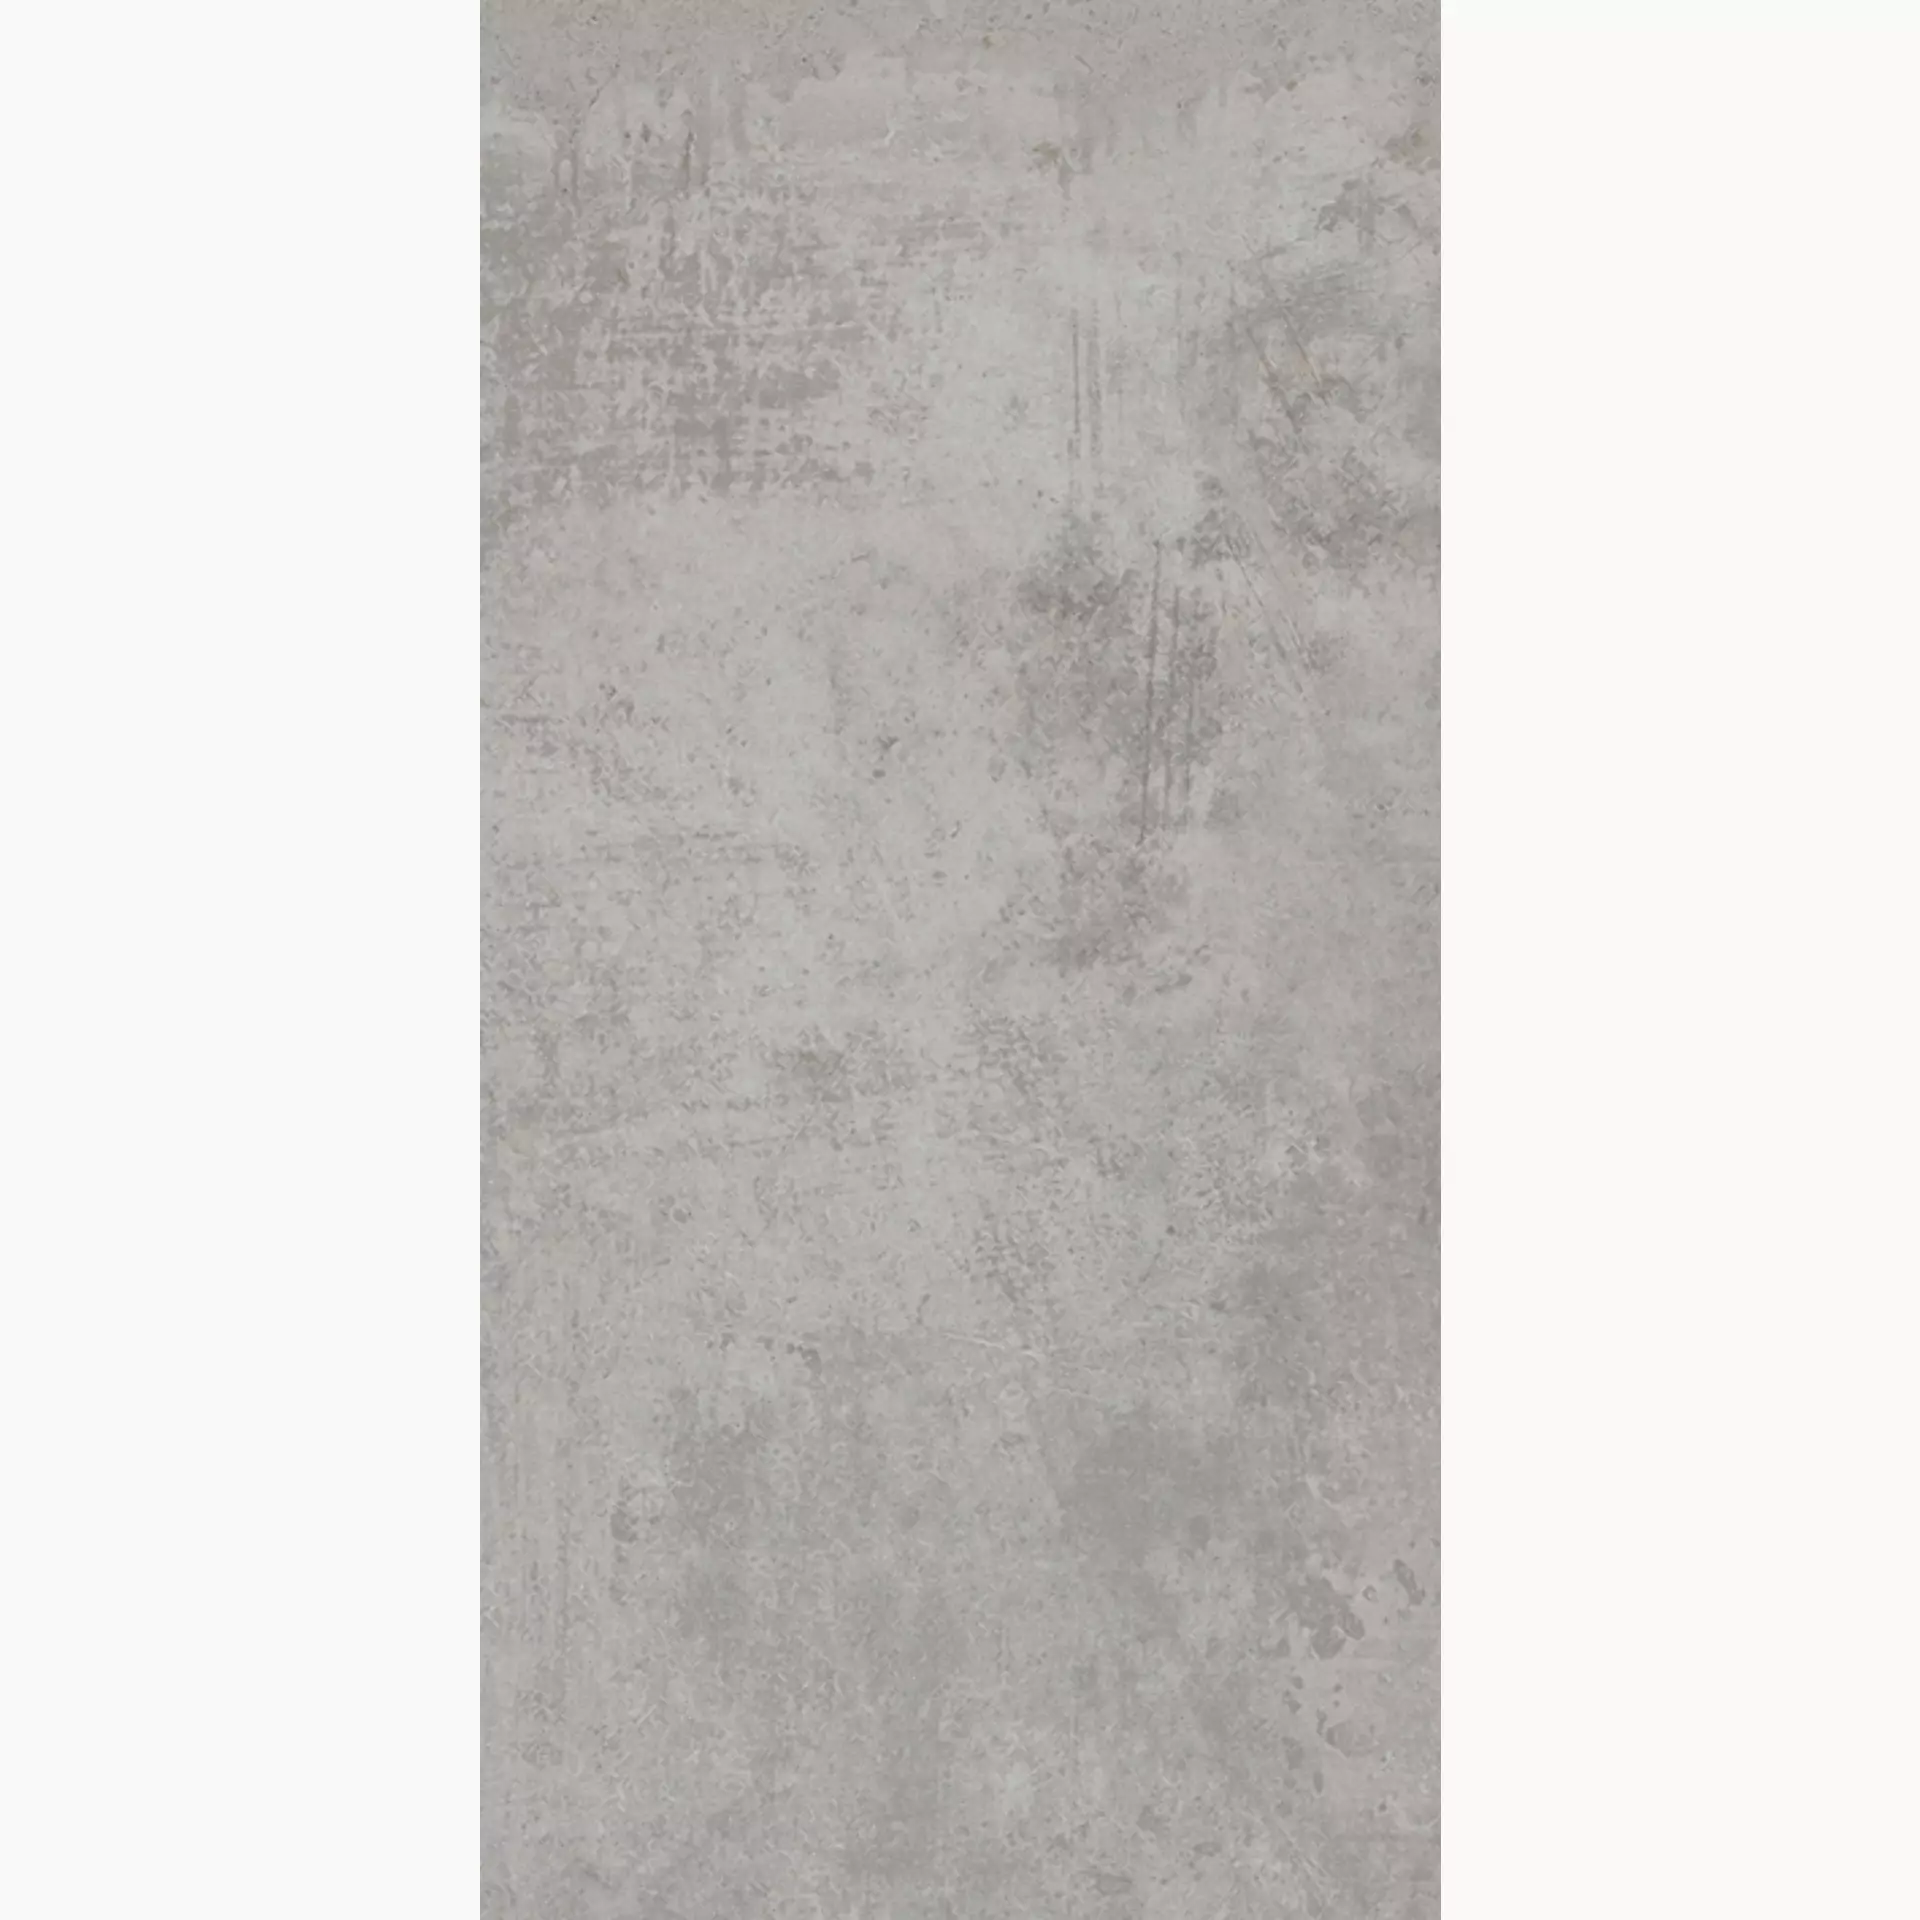 Villeroy & Boch Atlanta Concrete Grey Matt 2394-AL60 30x60cm rectified 10mm